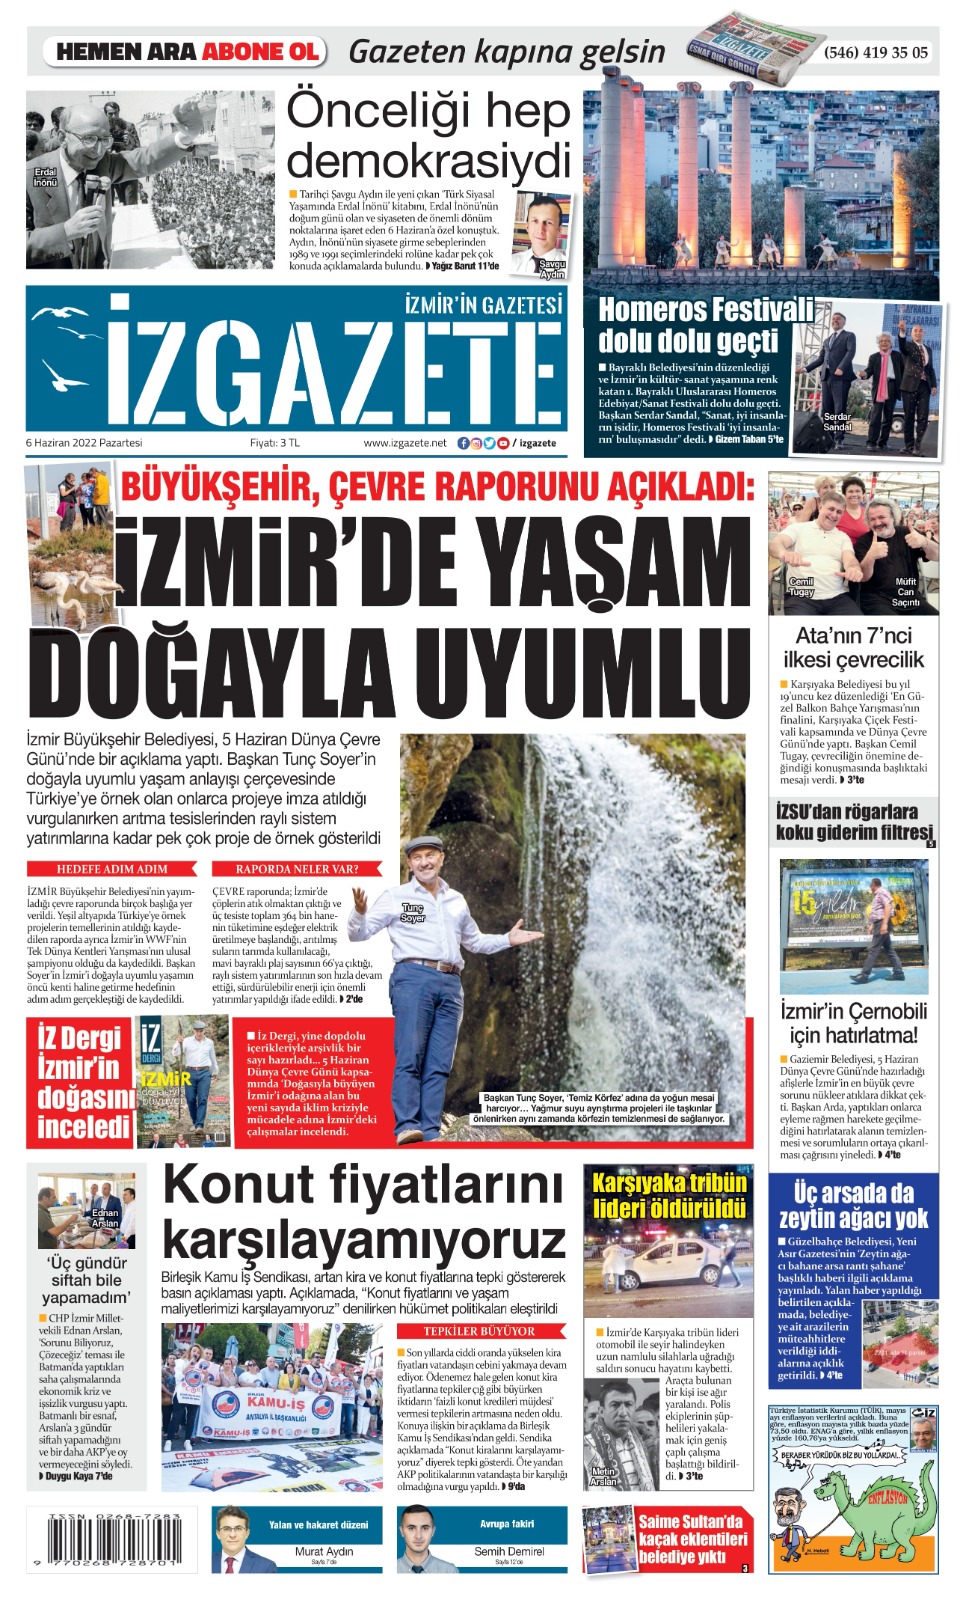 İz Gazete - İzmir'in Gazetesi - 06.06.2022 Manşeti